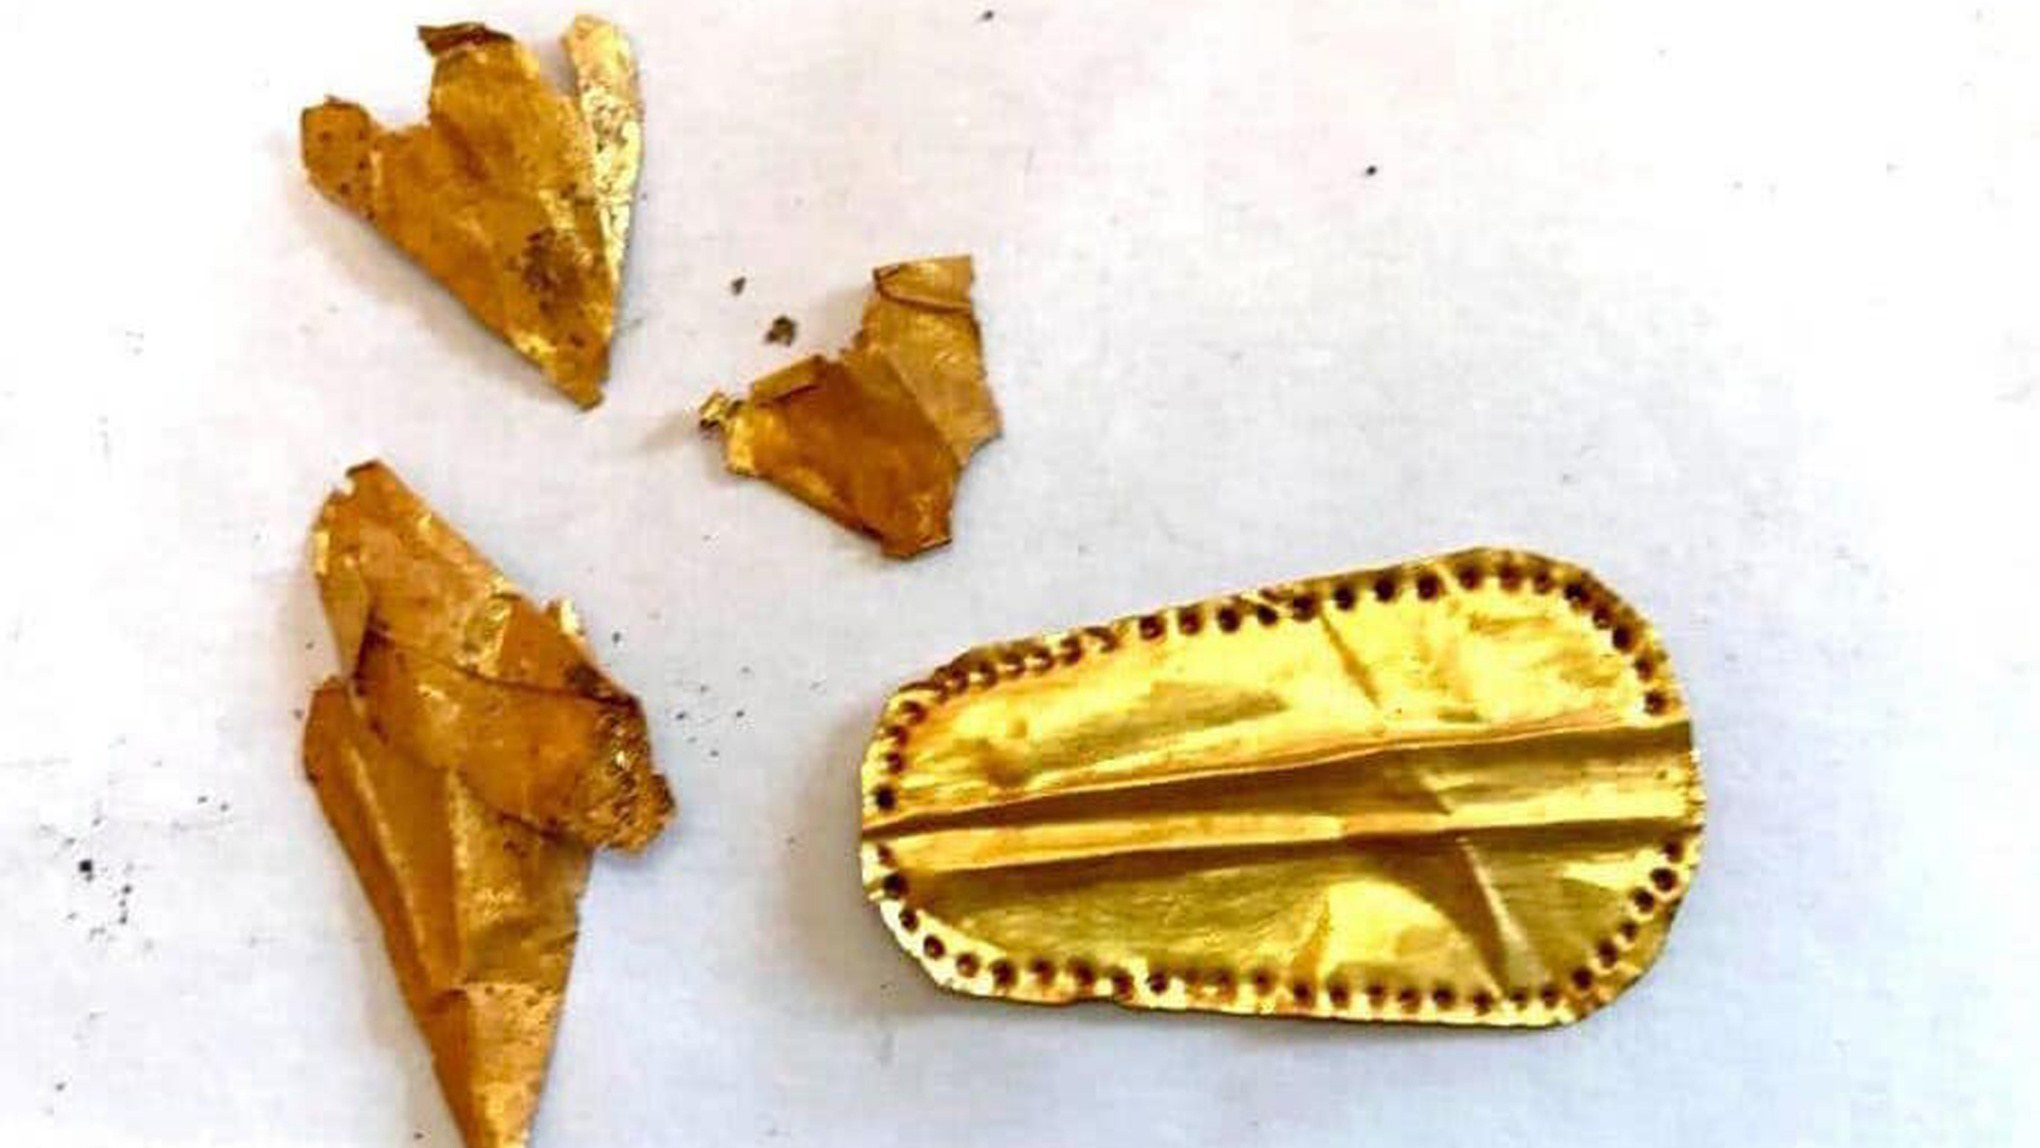 O imagine adnotată arată limba de aur descoperită în necropola Qewaisna din Egipt.